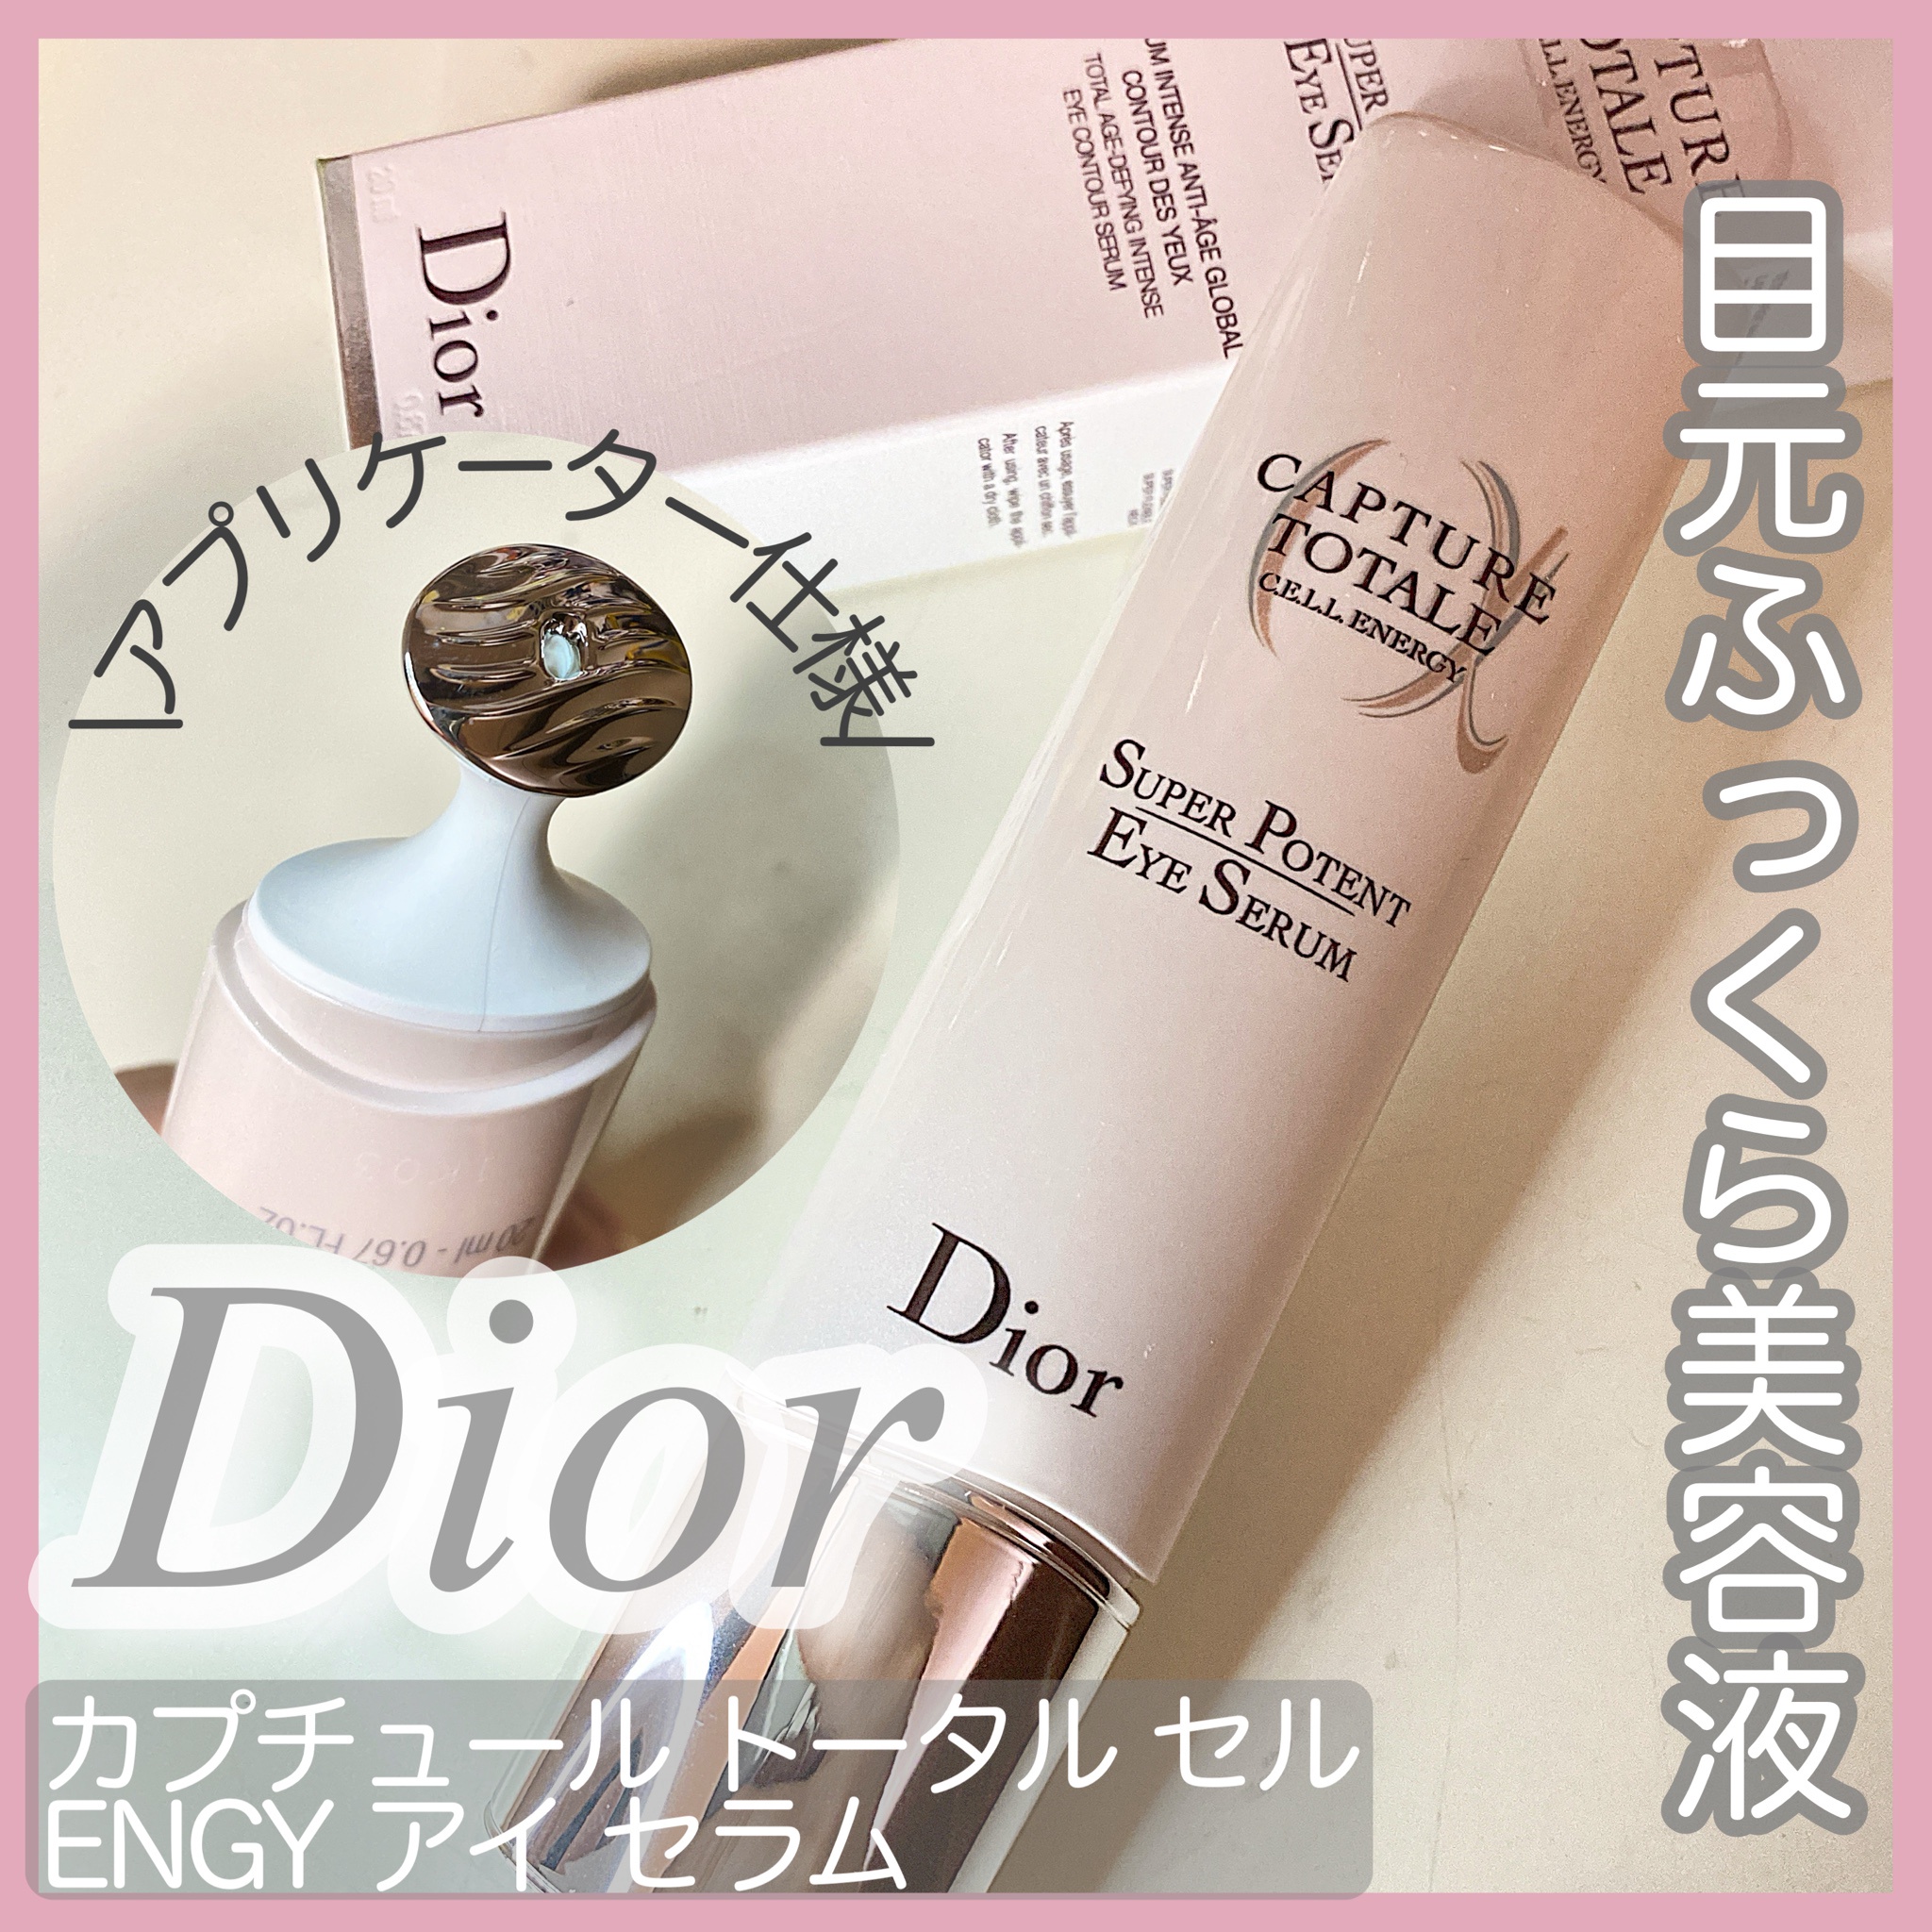 Dior ディオール カプチュール トータル セル ENGY アイ セラム - アイケア